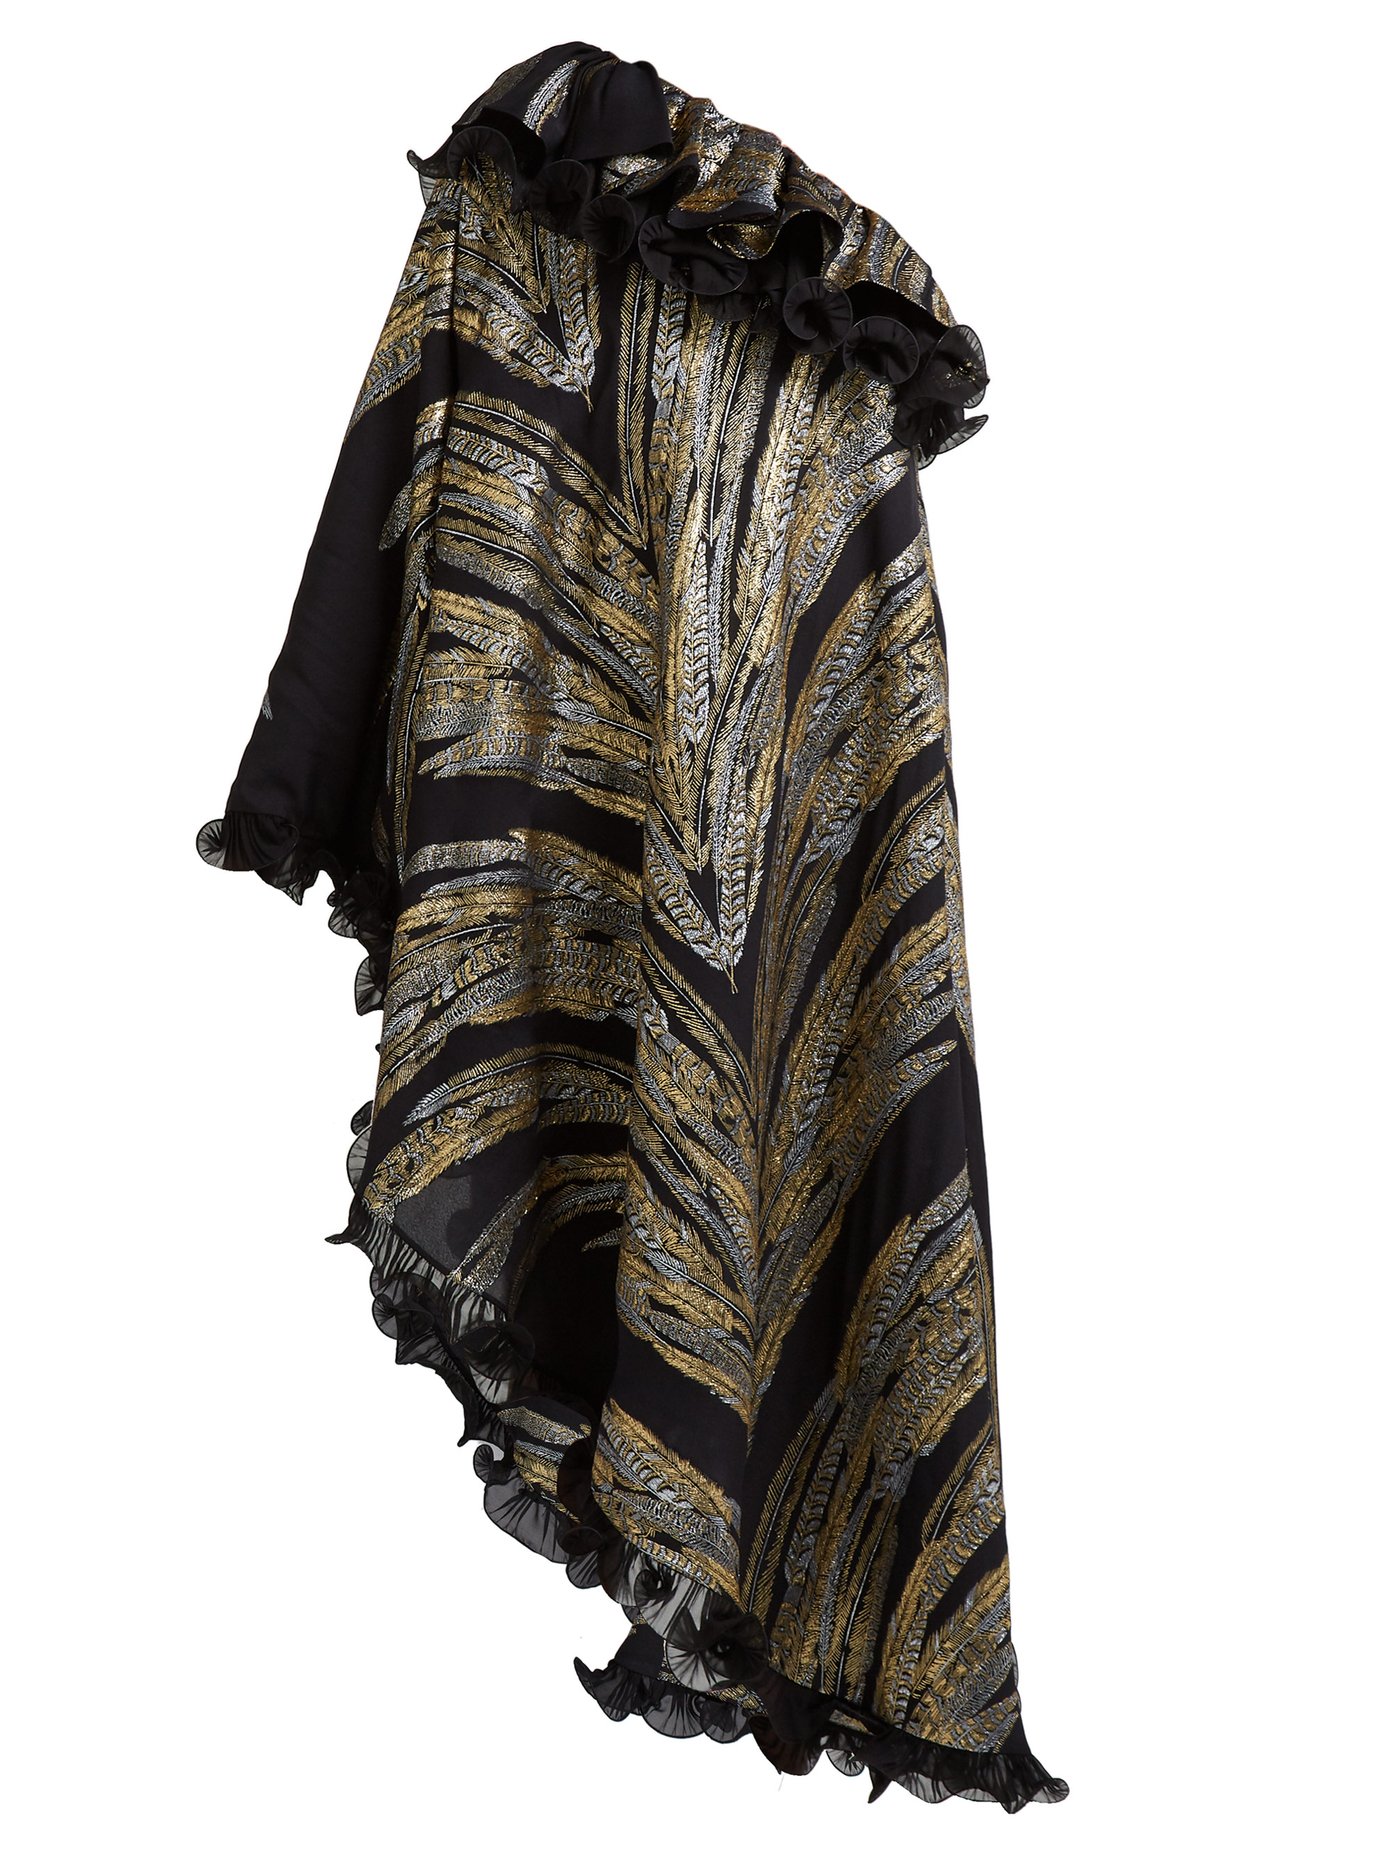 Dundas Feather fil-coupé asymmetric gown